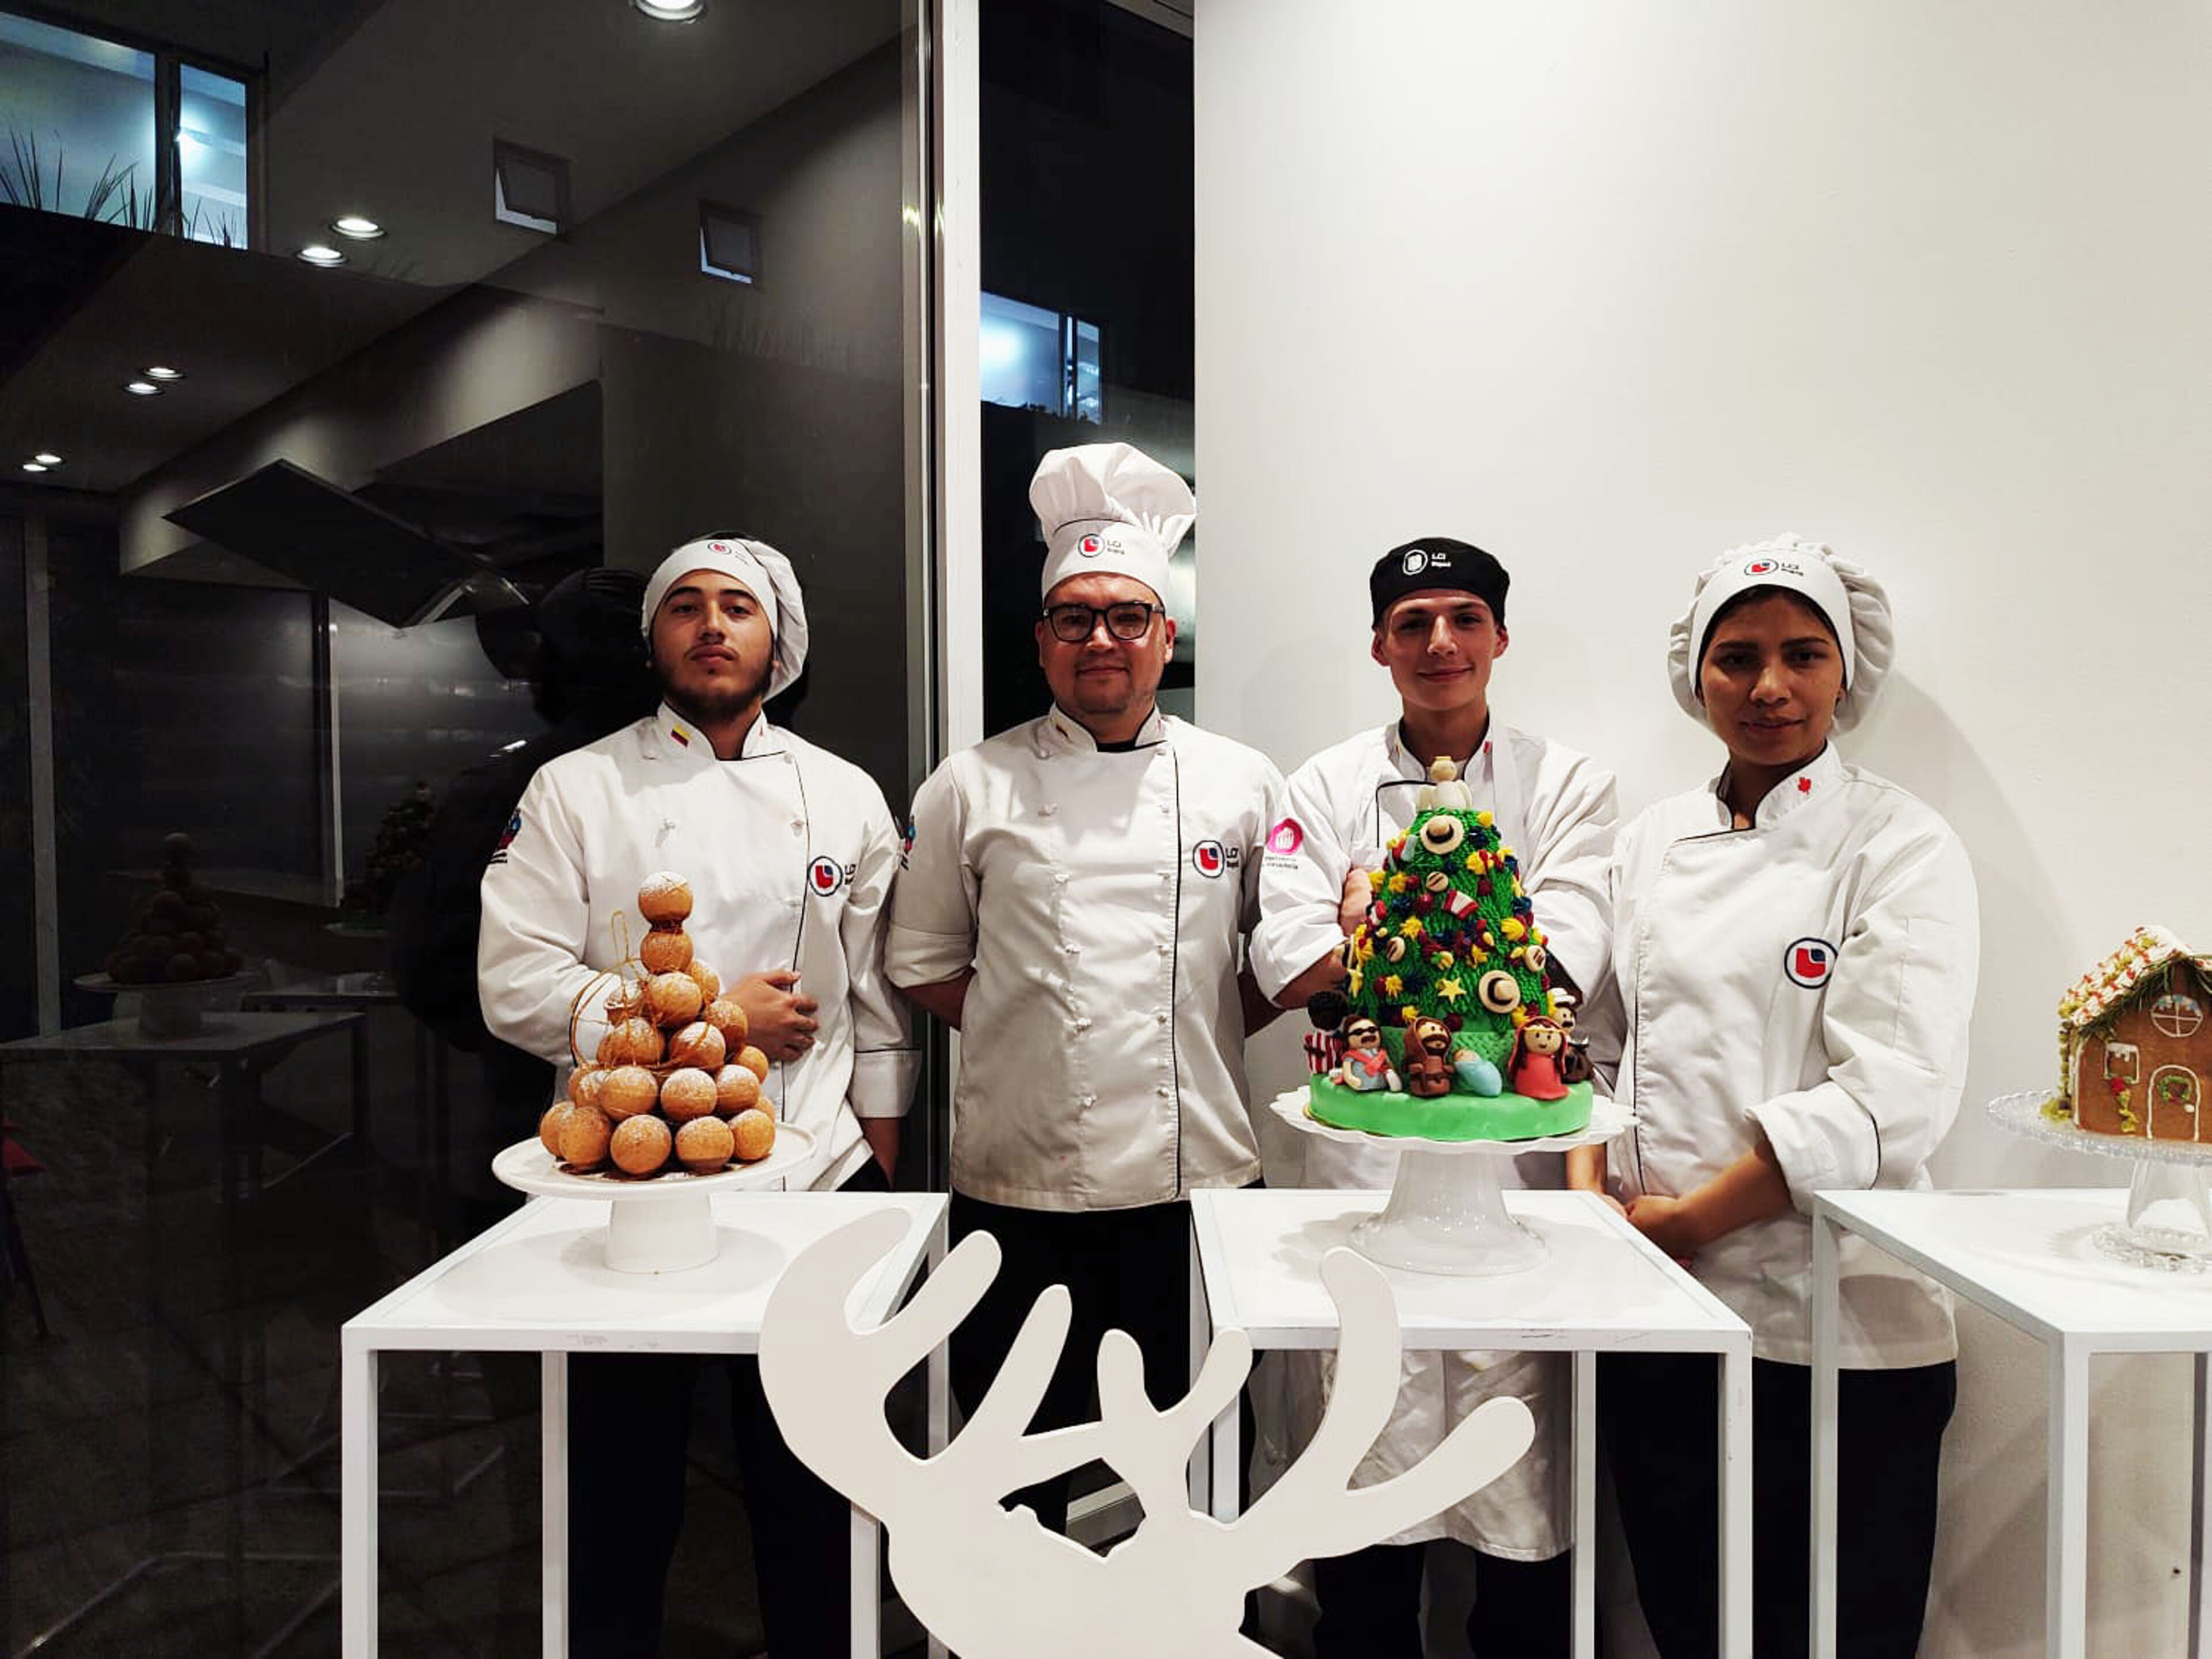 Cuatro pasteleros uniformados mostrando sus creaciones festivas, incluyendo un croquembouche, un pastel de árbol de Navidad y una casa de jengibre.